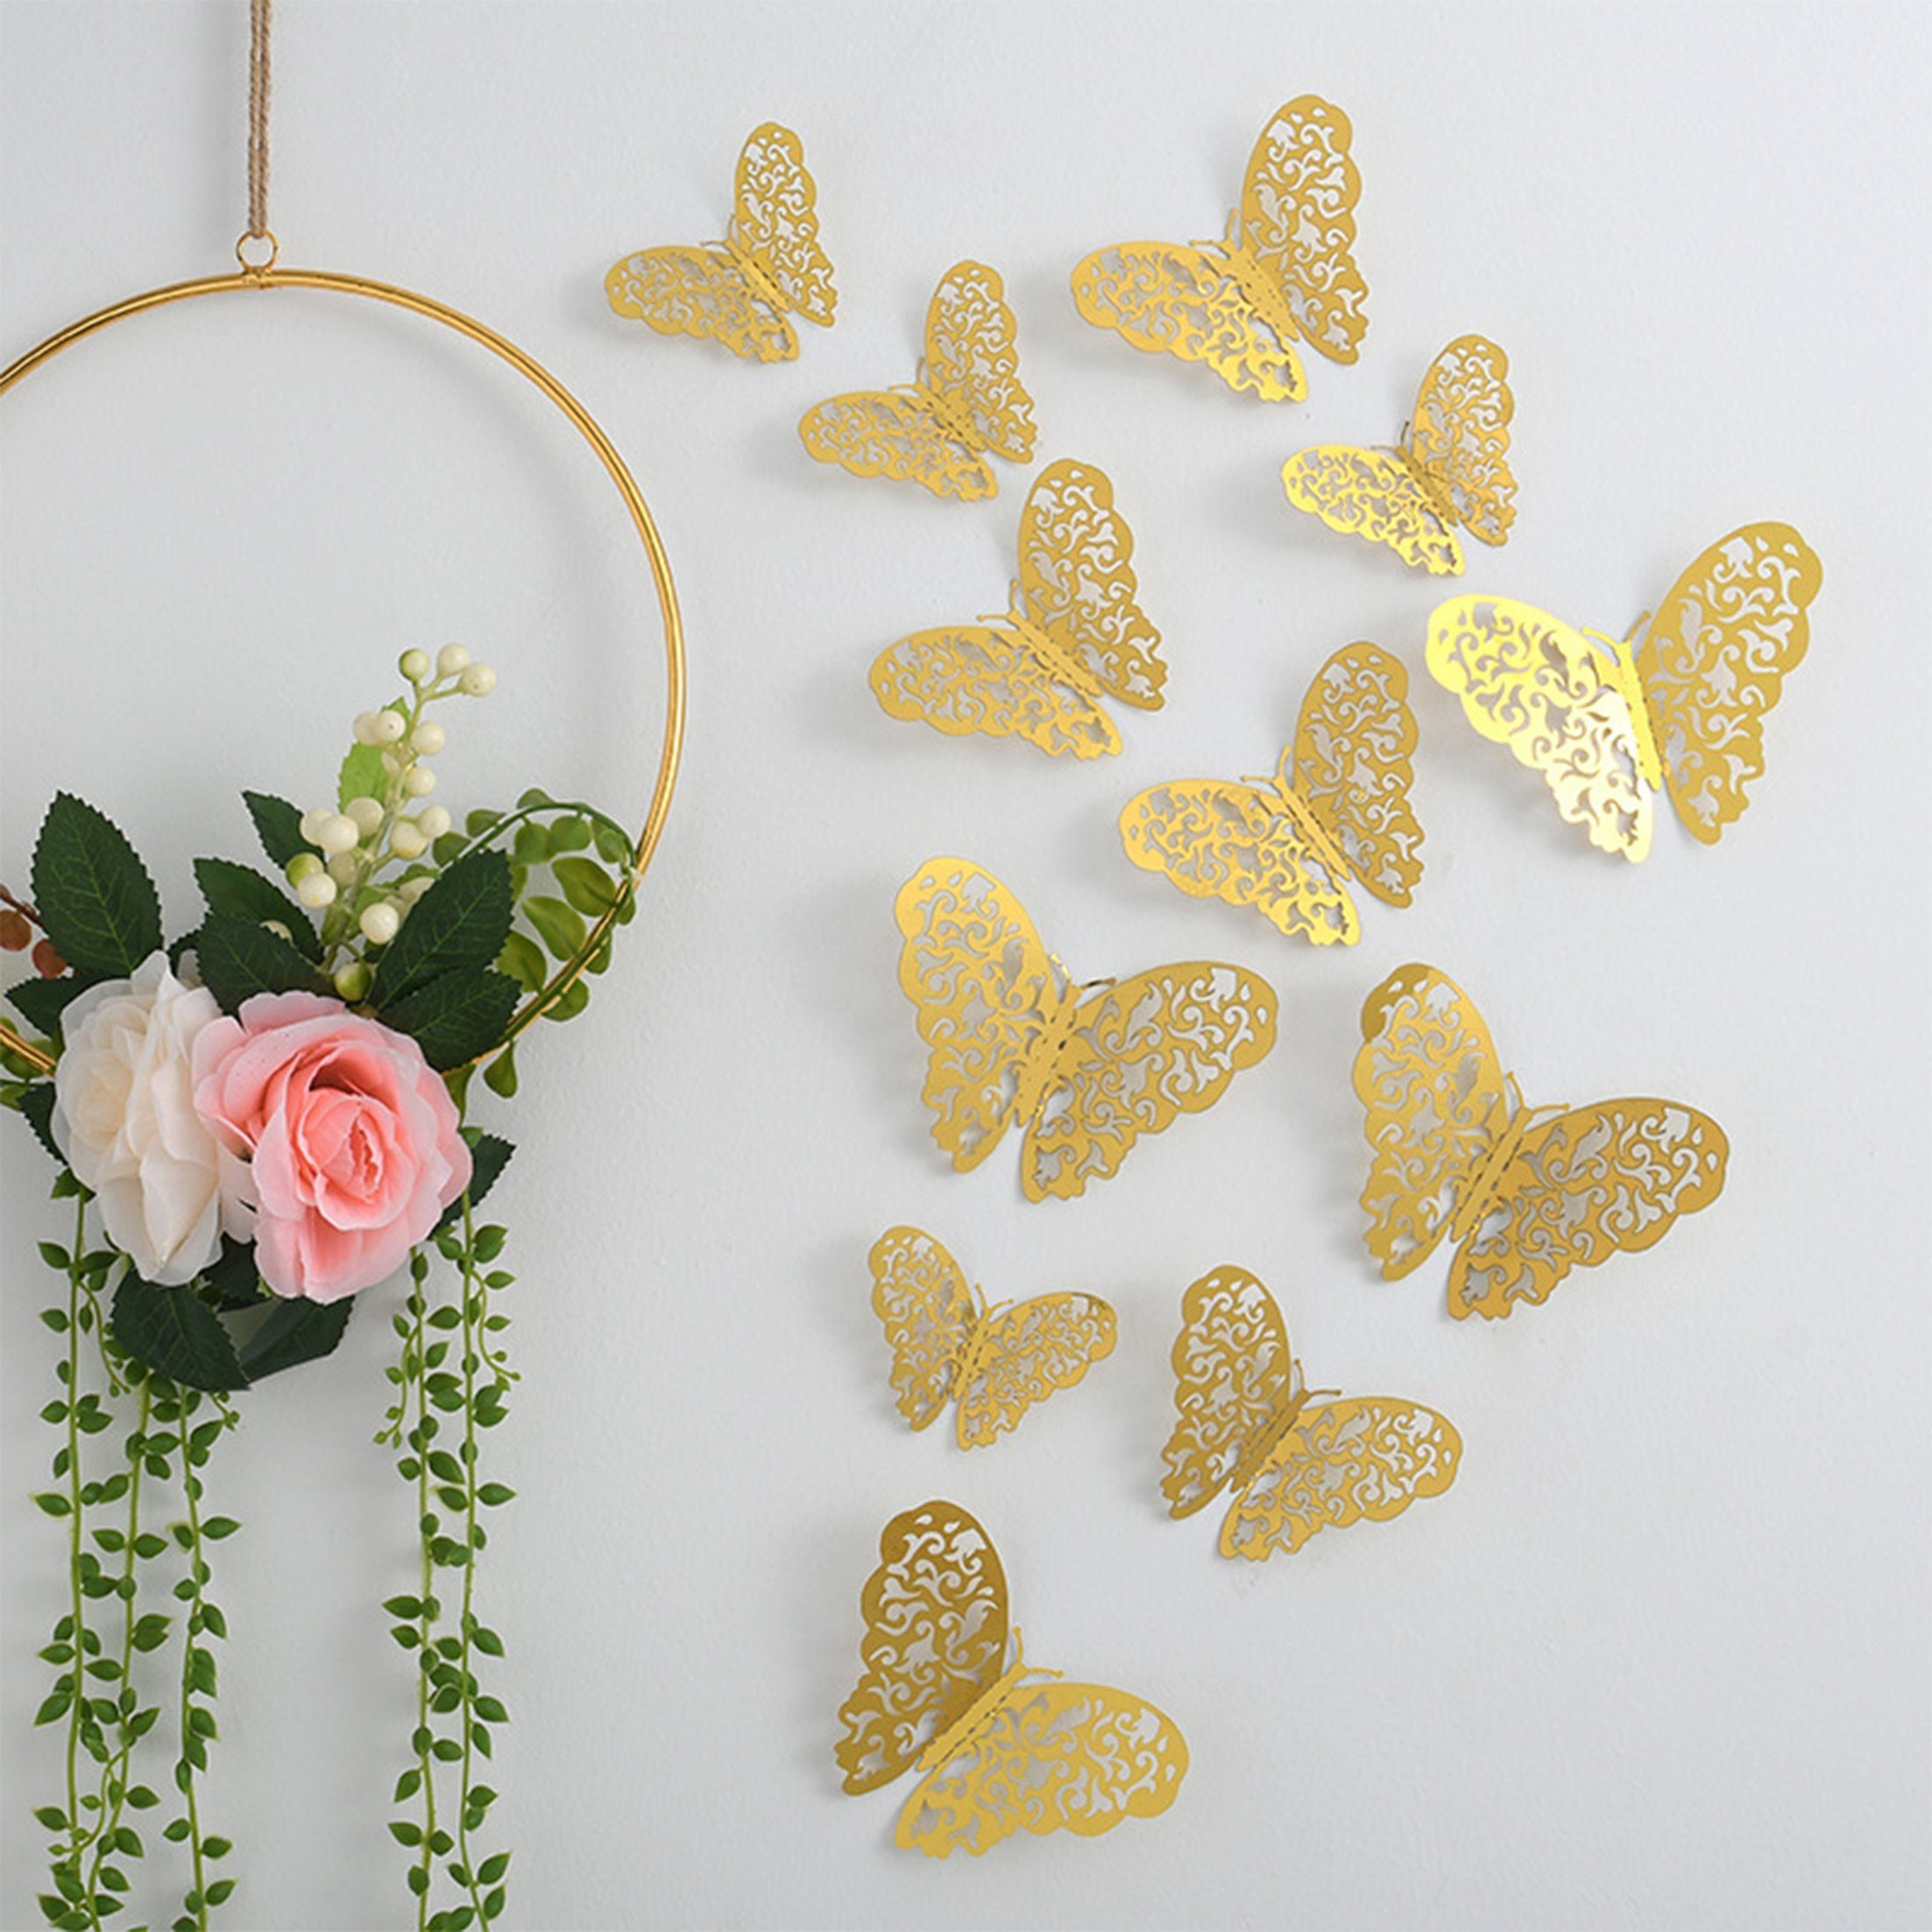 Dedom 3D-Wandtattoo 3D-Schmetterlings-Wandaufkleber,Wanddekoration Metalltextur (12 St), 3d Hohlwandaufkleber,kreative Aufkleber